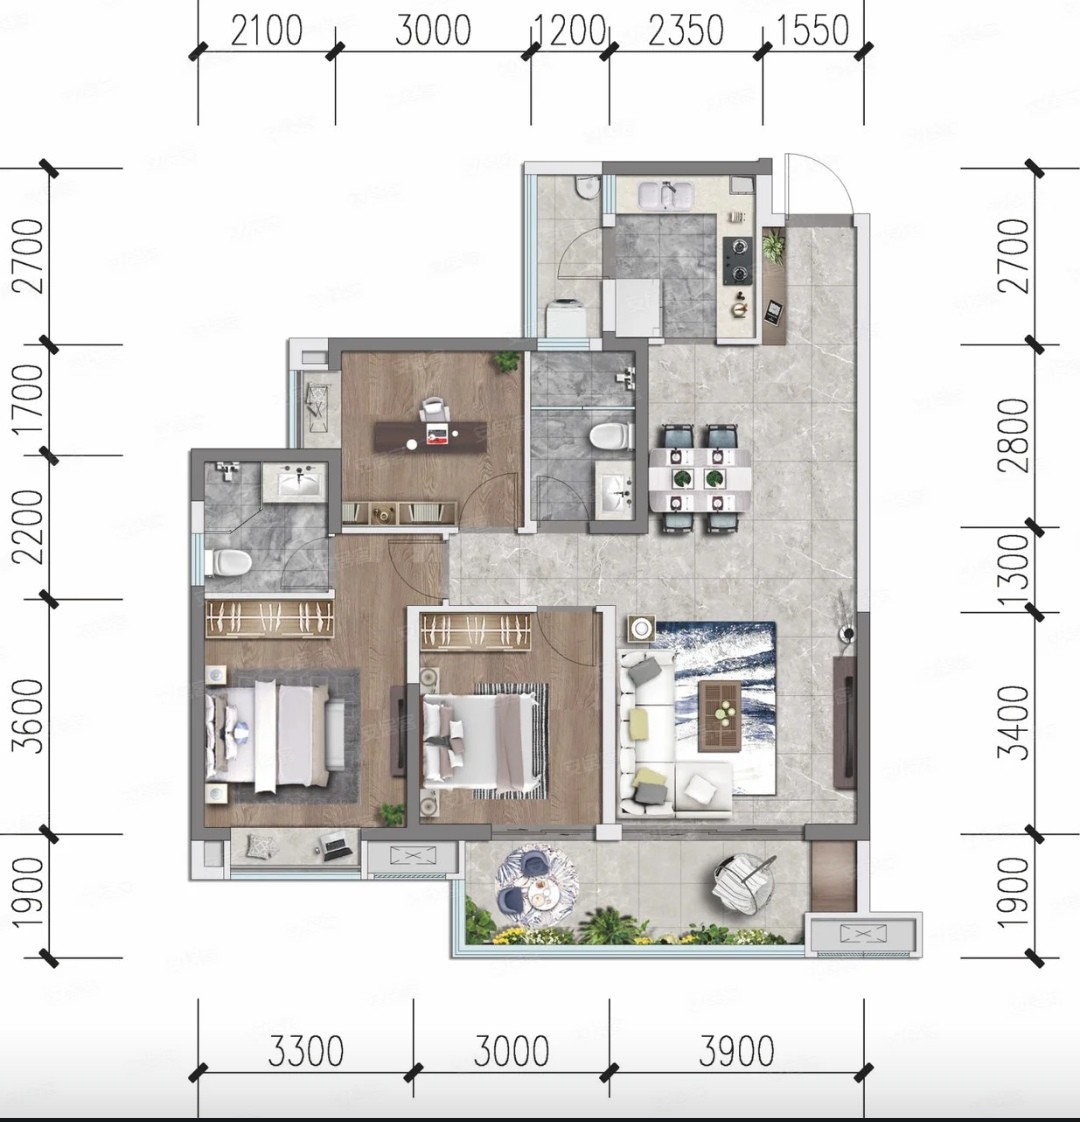 109美式三房装修效果图,109平方米美式风格装修案例效果图-美广网(图1)